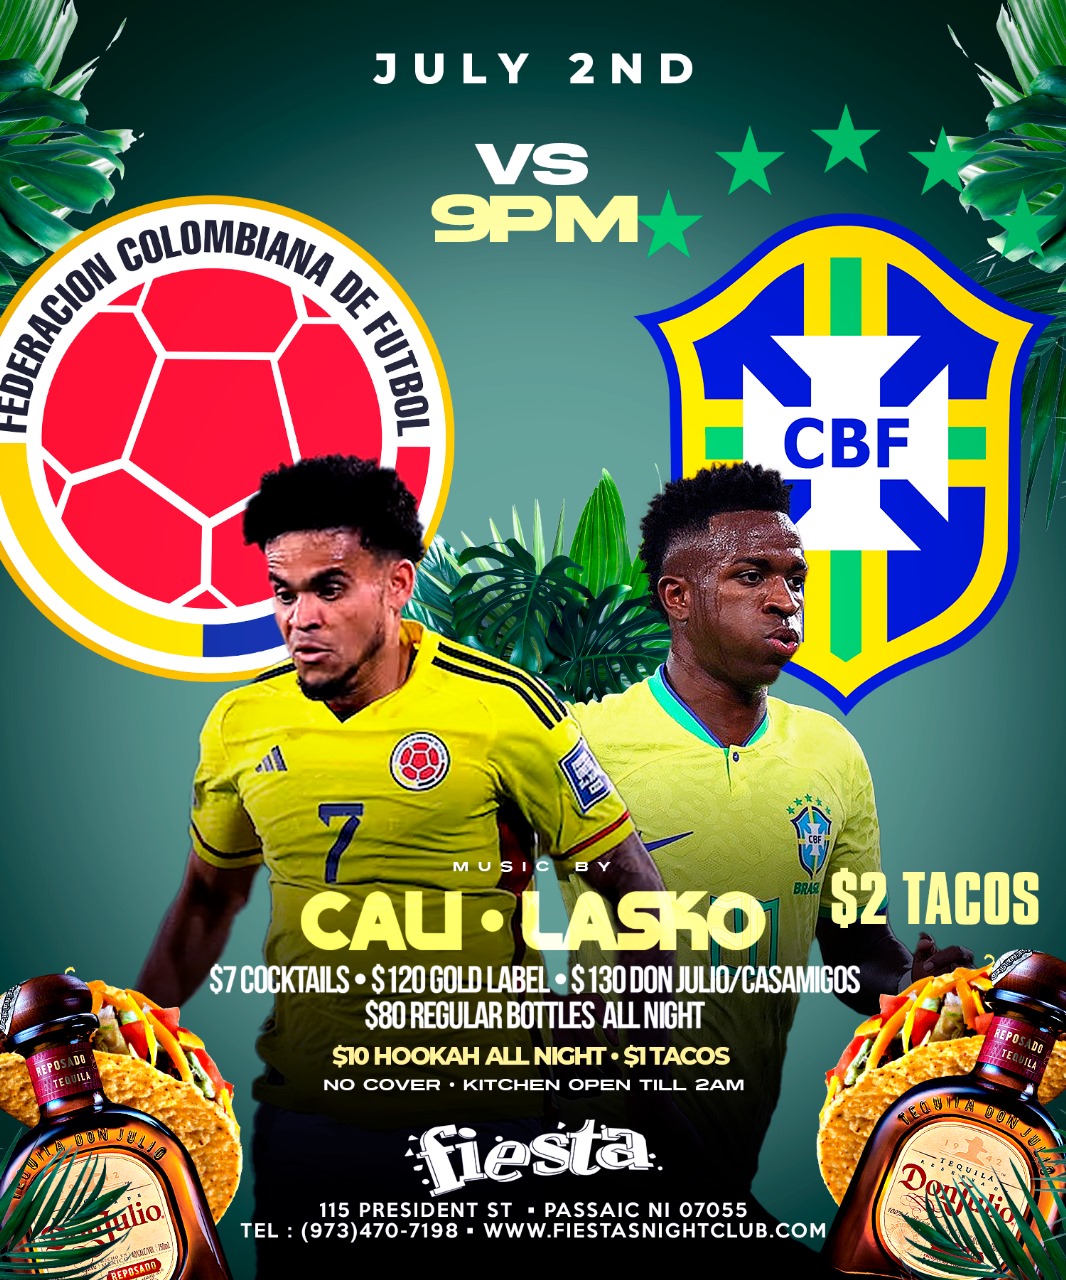 DJ CALI, DJ LASKO COPA AMERICA COLOMBIA VS. BRASIL